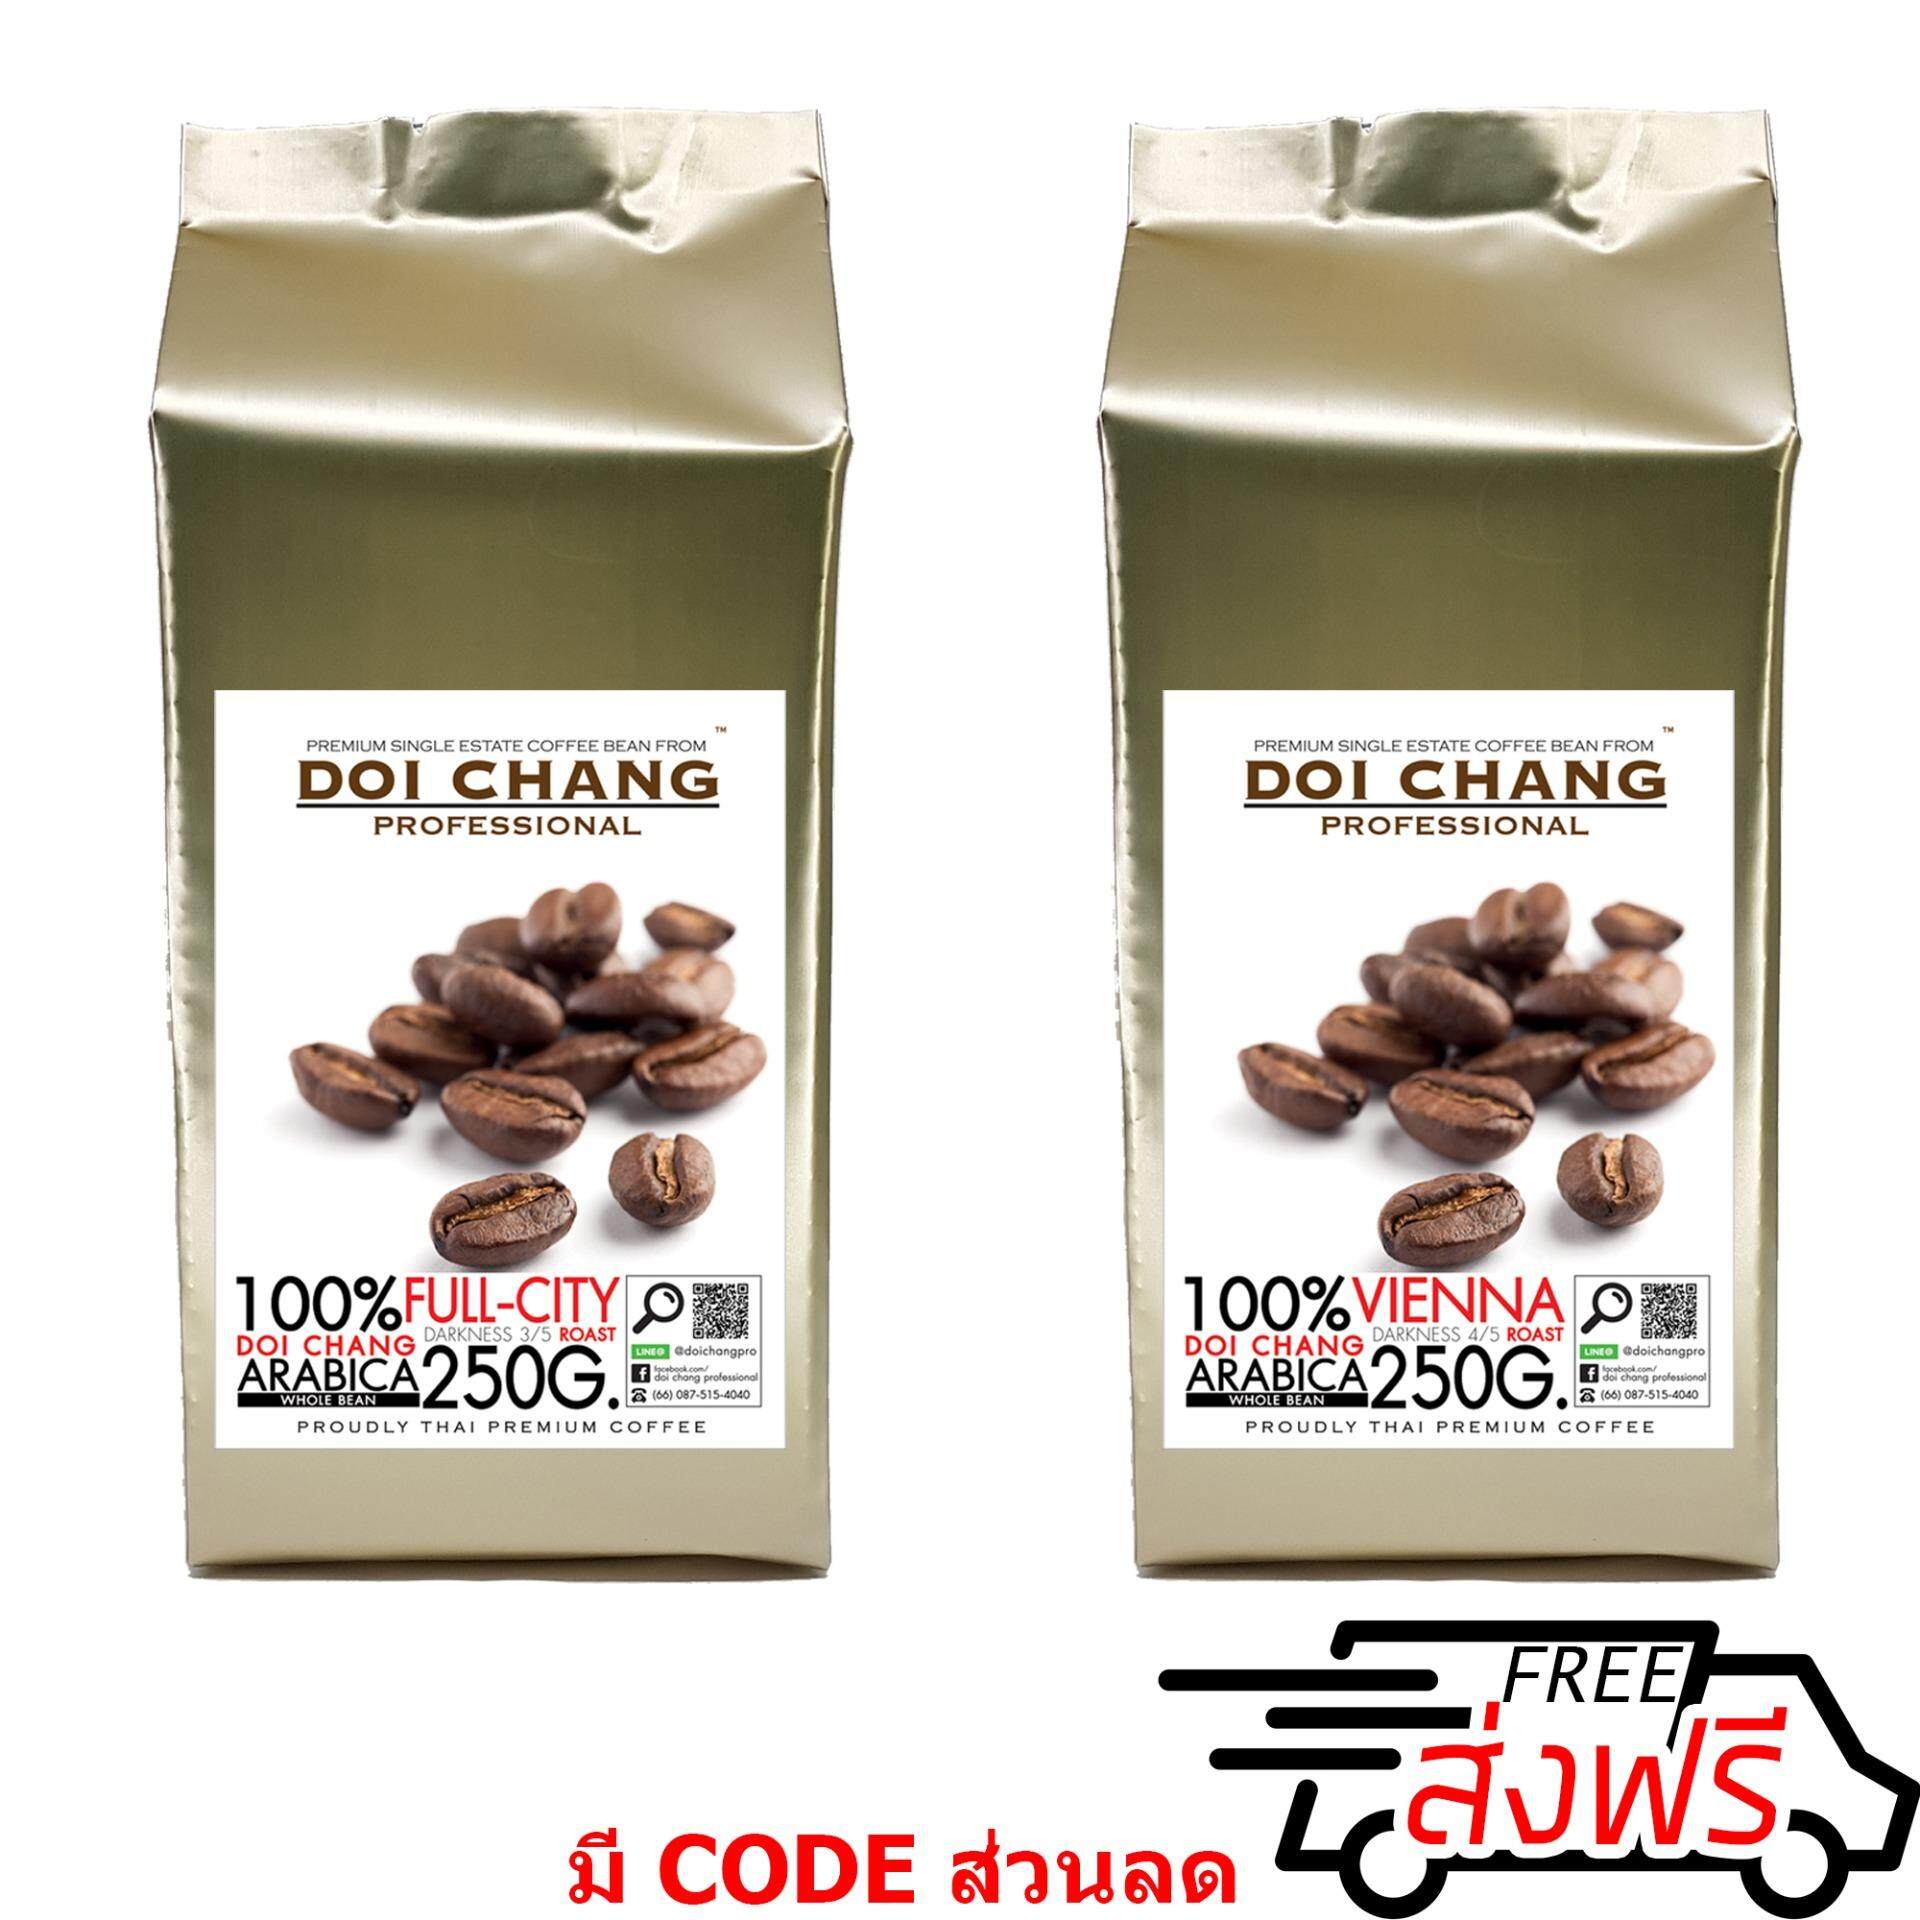 กาแฟอราบิก้า ดอยช้าง คั่วอ่อน 1 ถุง+คั่วกลาง 1 ถุง Full-City 1 bag + Vienna 1 bag รวม 500 g.(2x250g.) Doi Chang Professional แบบเมล็ด Doi Chang Professional Roasted Coffee Whole Bean เมล็ดกาแฟ จาก เมล็ดกาแฟดอยช้าง (กาแฟสด)